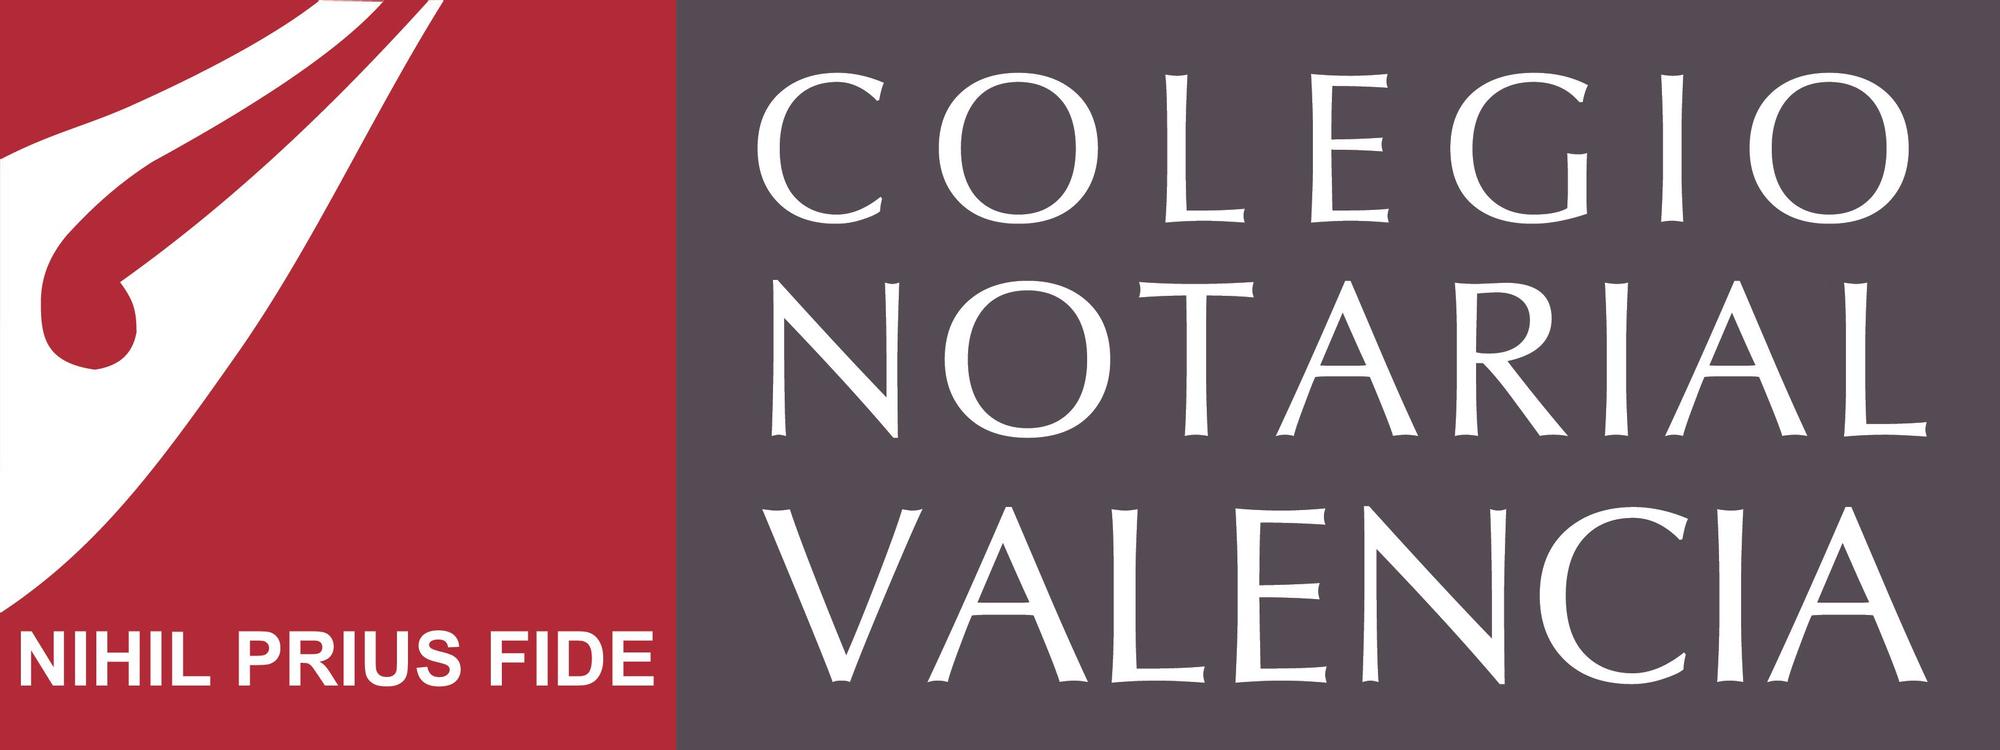 COLEGIO NOTARIAL DE VALENCIA.